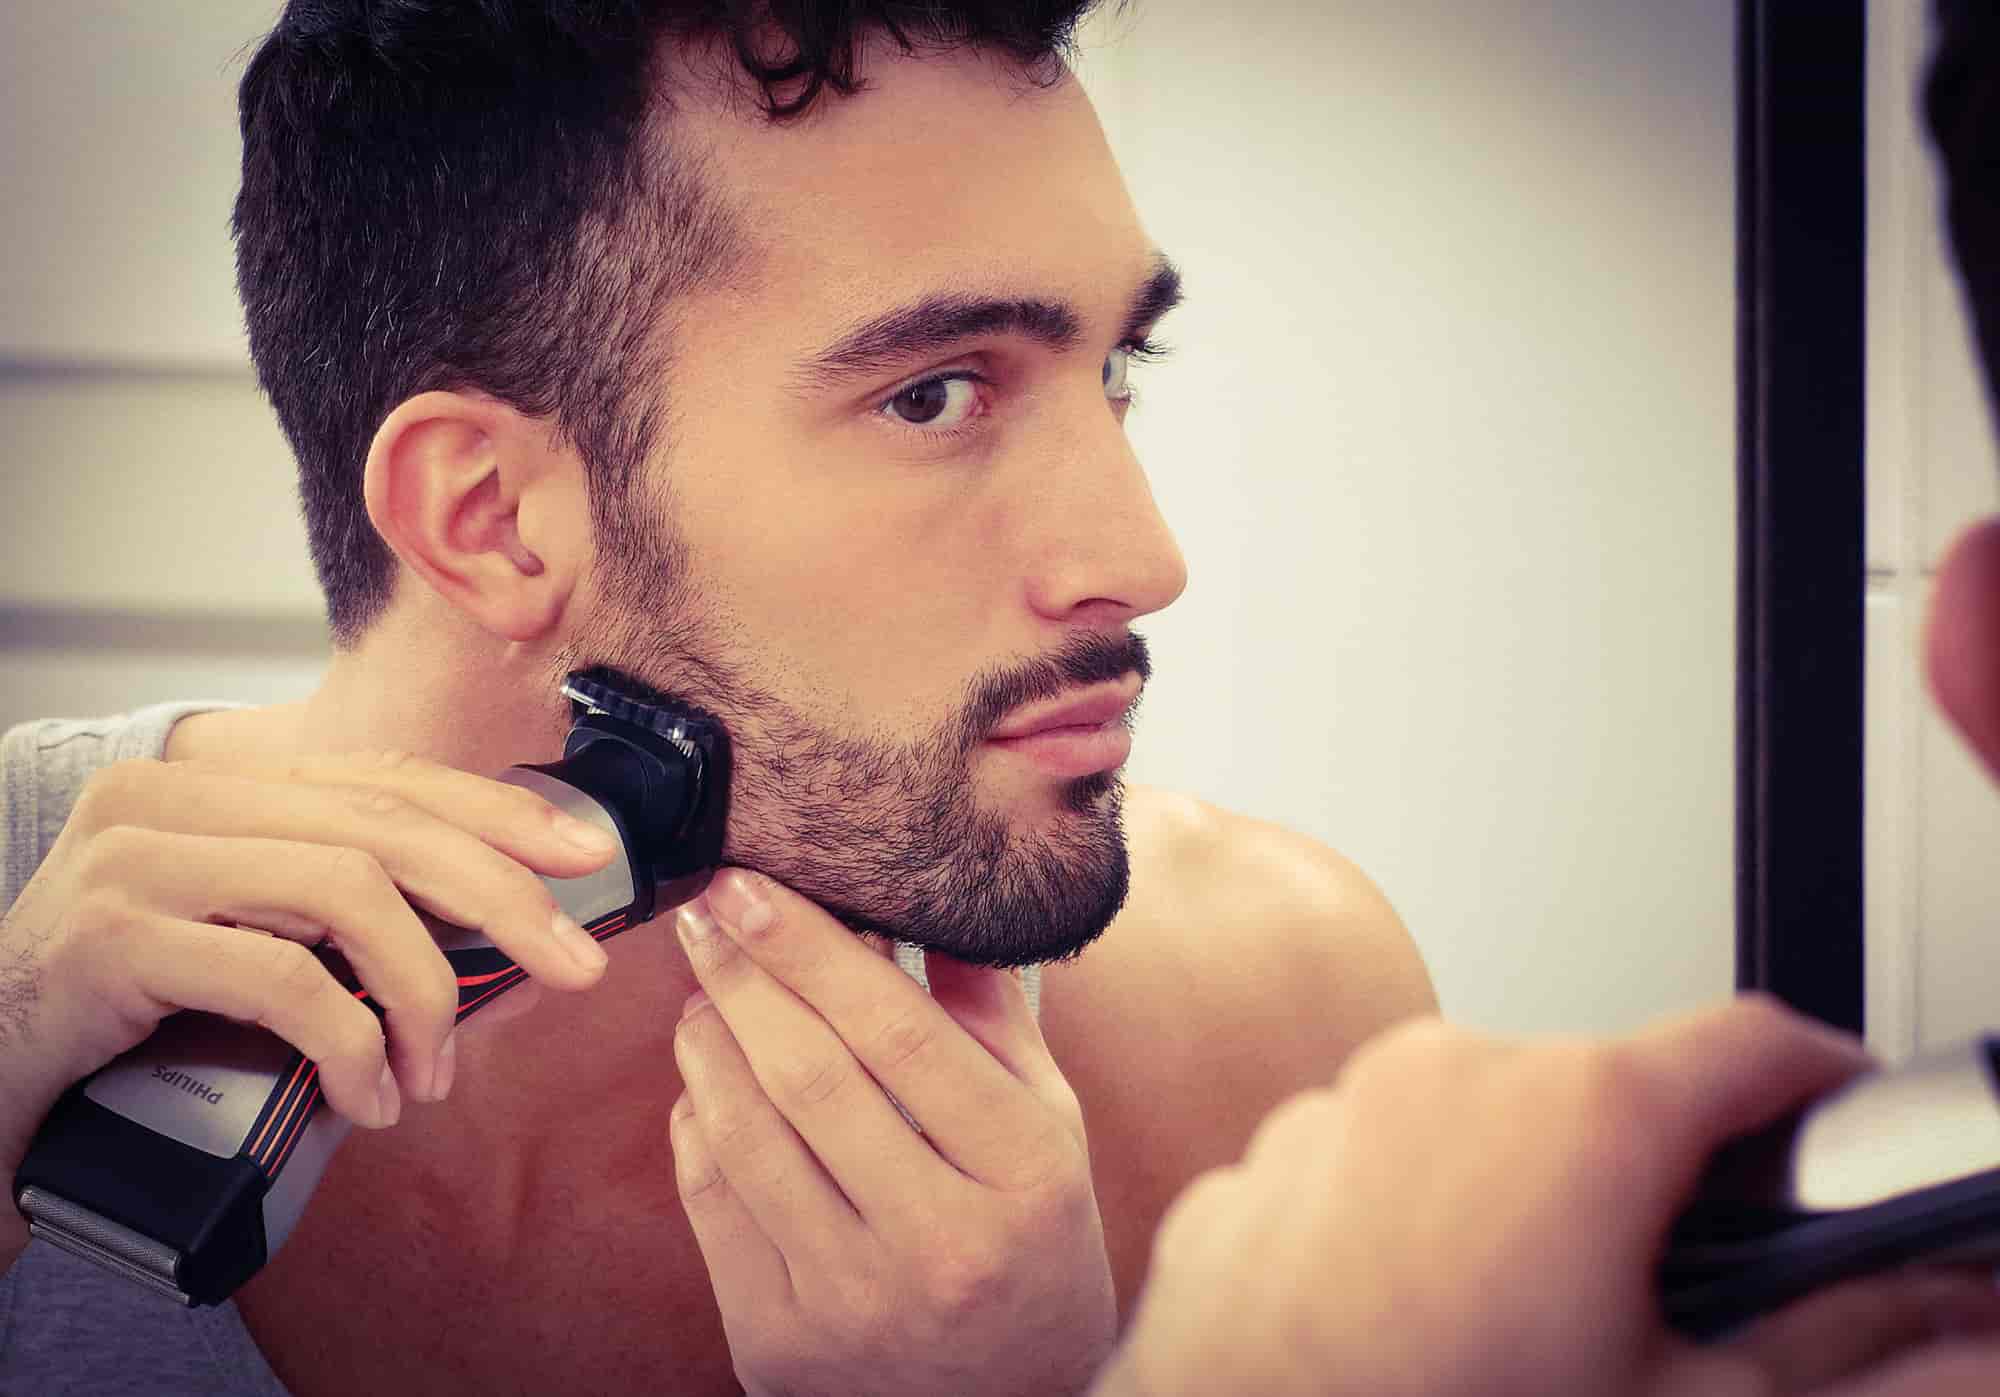 Как правильно бриться Все для бритья: как выбрать бритву, средство, аксессуары Чем лучше бриться мужчине – станком или электрической бритвой Почему у одних мужчин даже после бритья по-походному кожа здоровая, а у других – частые раздражения